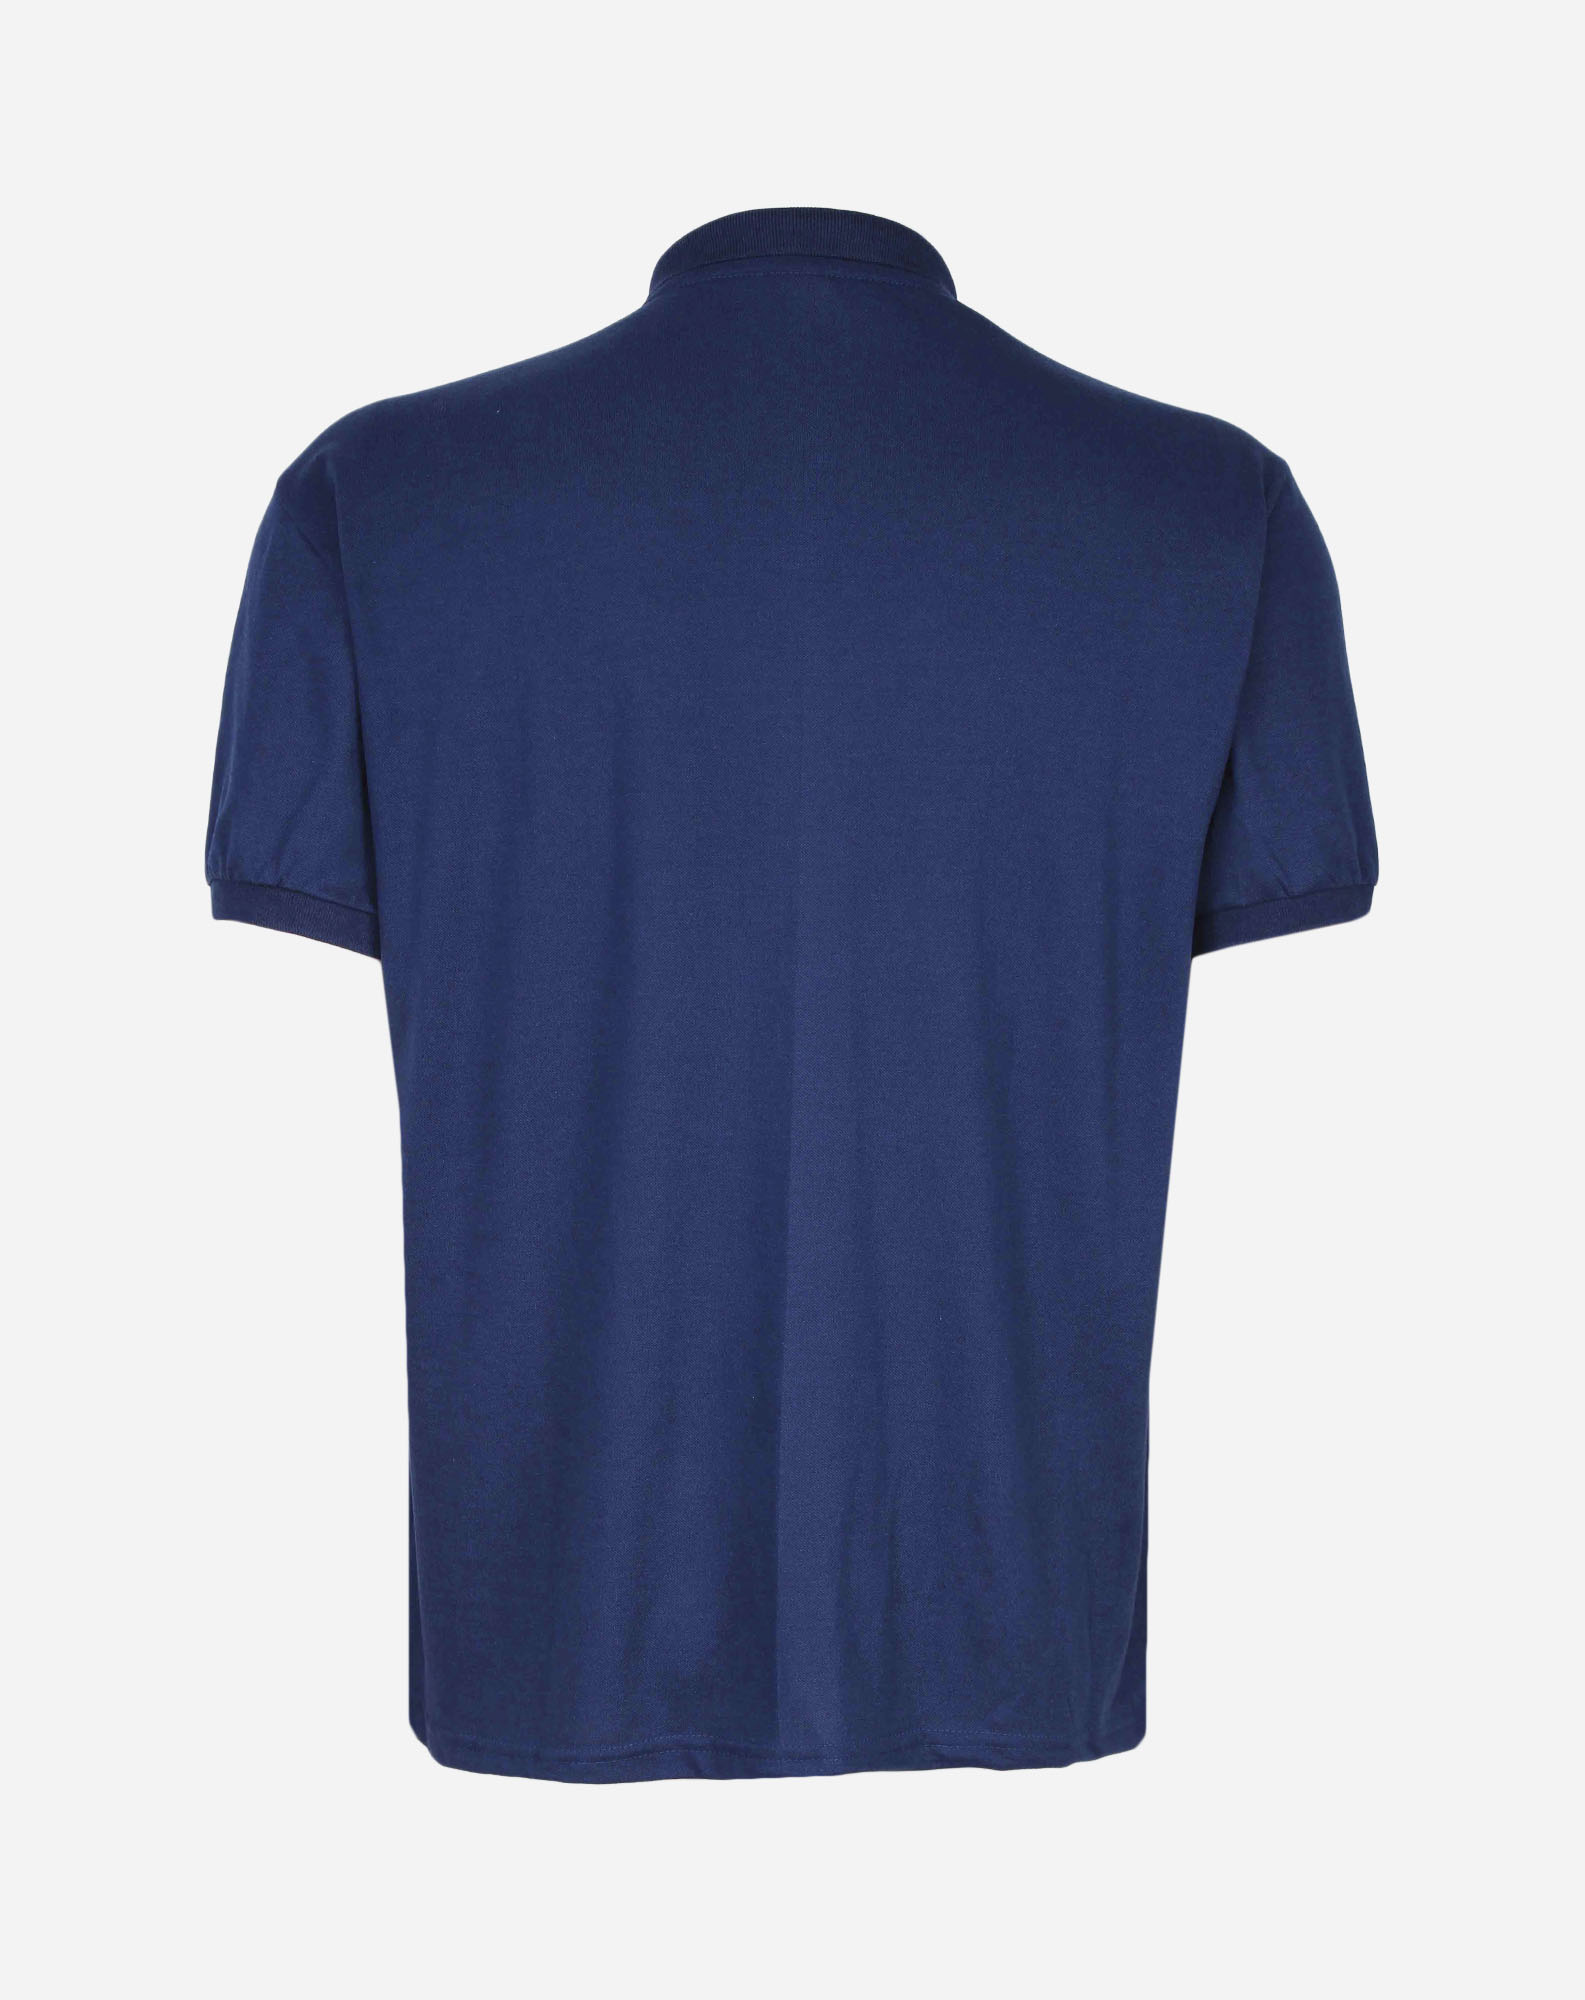 675149007 camisa polo manga curta plus size masculina botões marinho g1 ec6